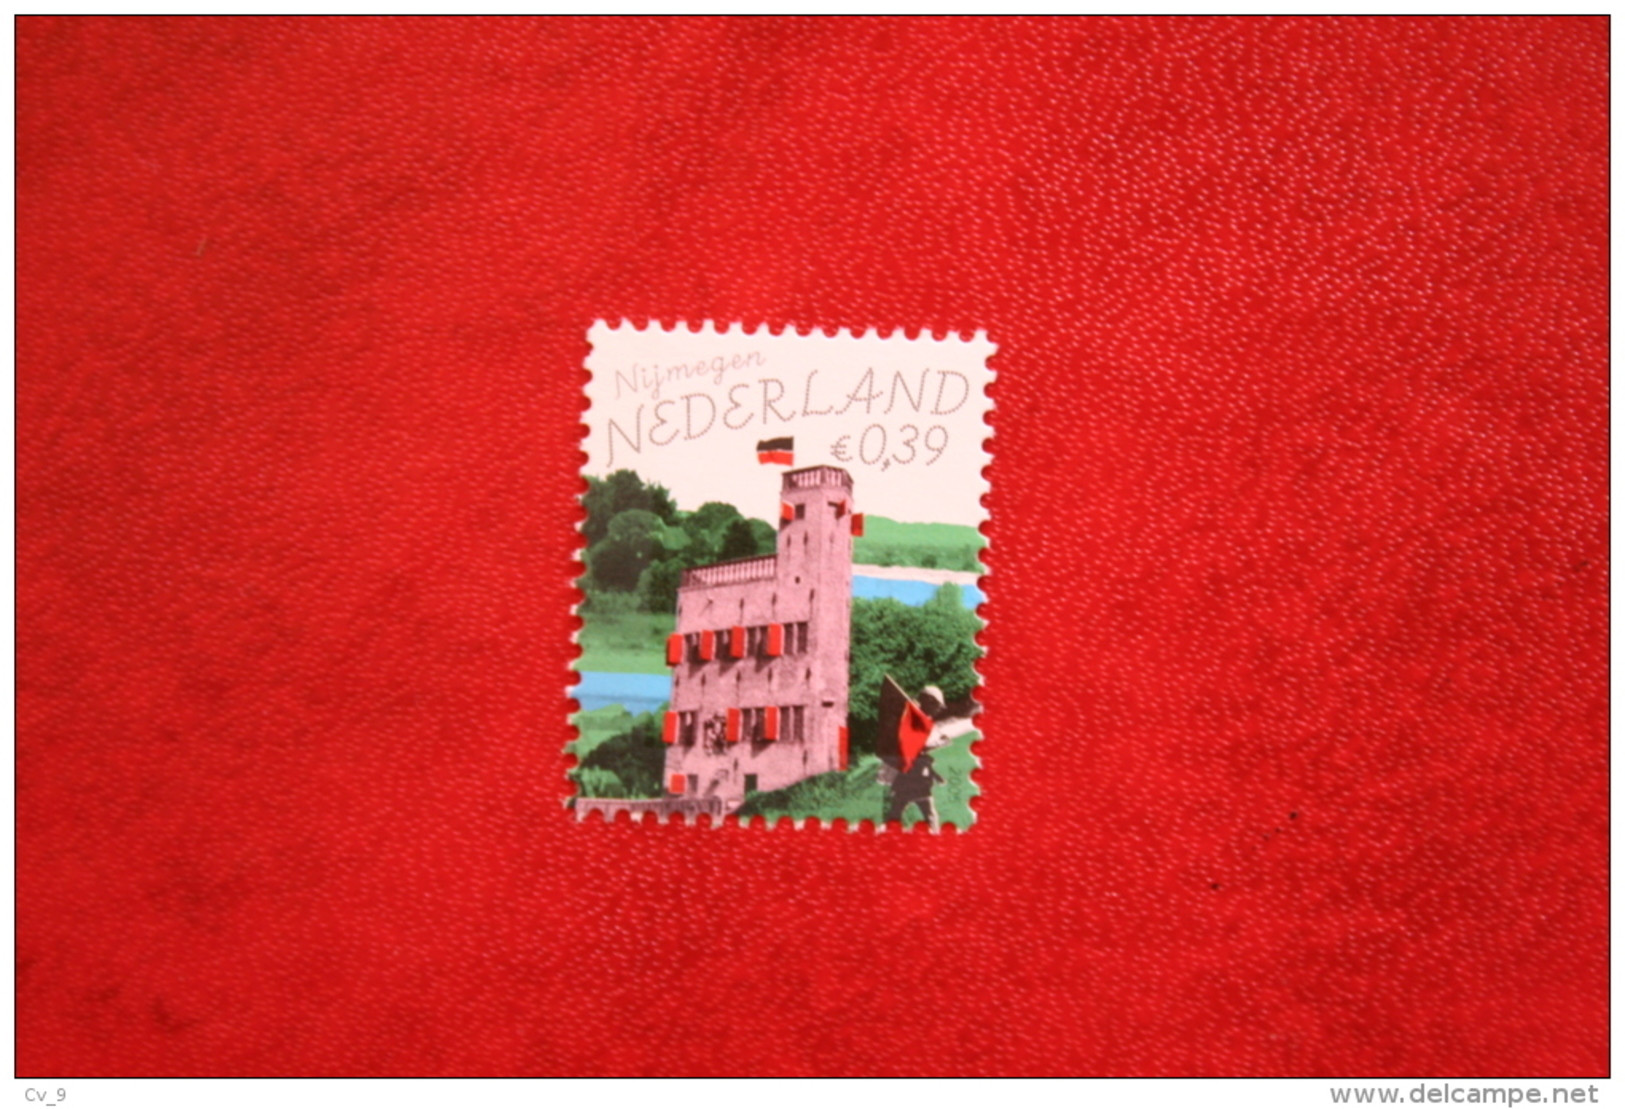 Mooi Nederland Nijmegen ; NVPH 2323 (Mi 2282) ; 2005 POSTFRIS / MNH ** NEDERLAND / NIEDERLANDE / NETHERLANDS - Unused Stamps